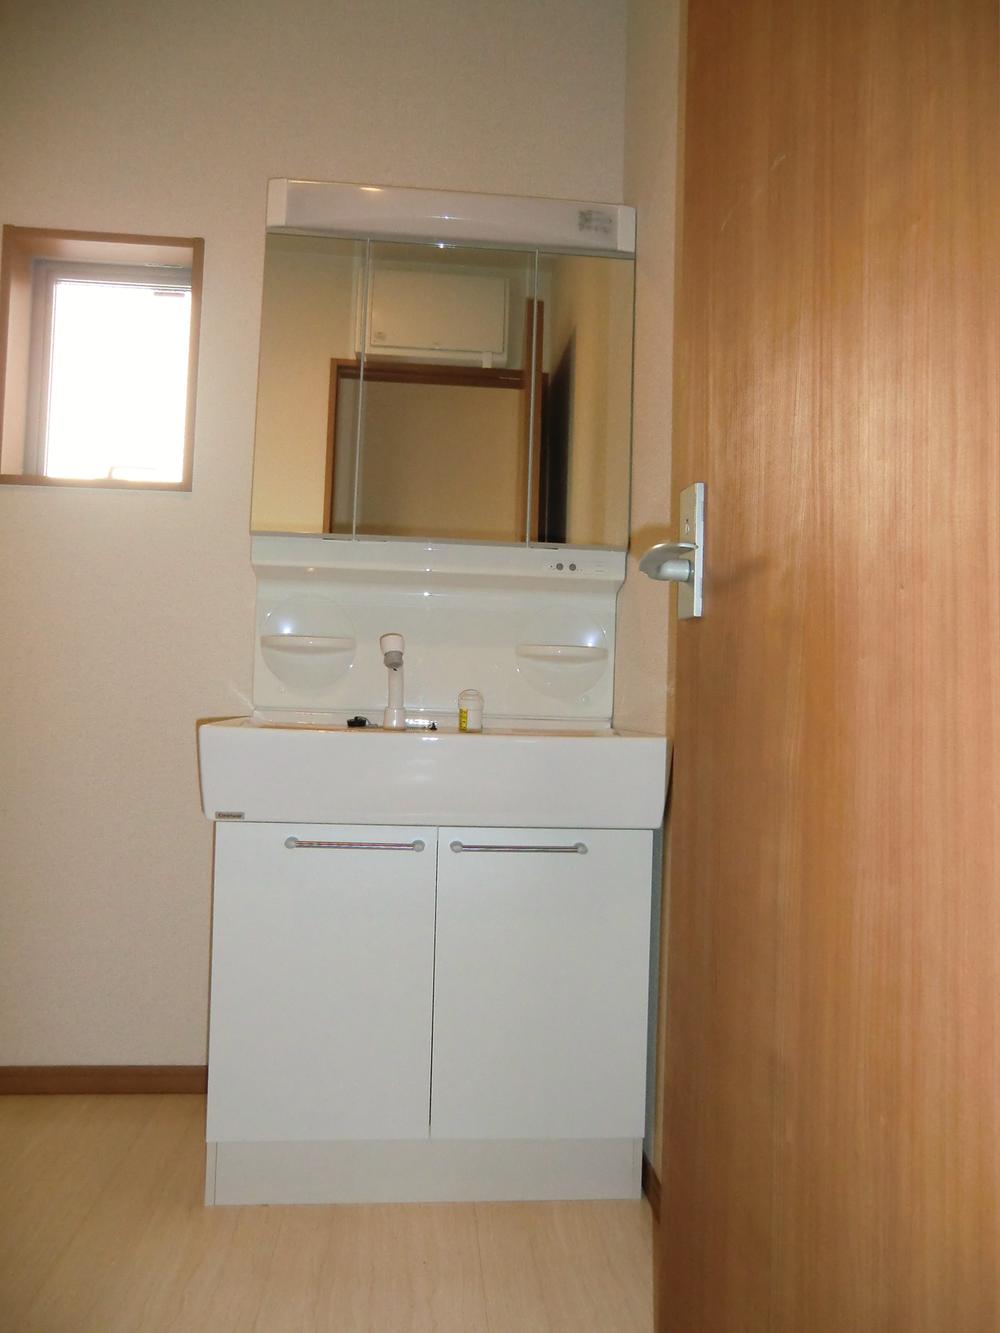 Wash basin, toilet. ◇ wash basin ◇  Three-sided mirror Shampoo dresser 